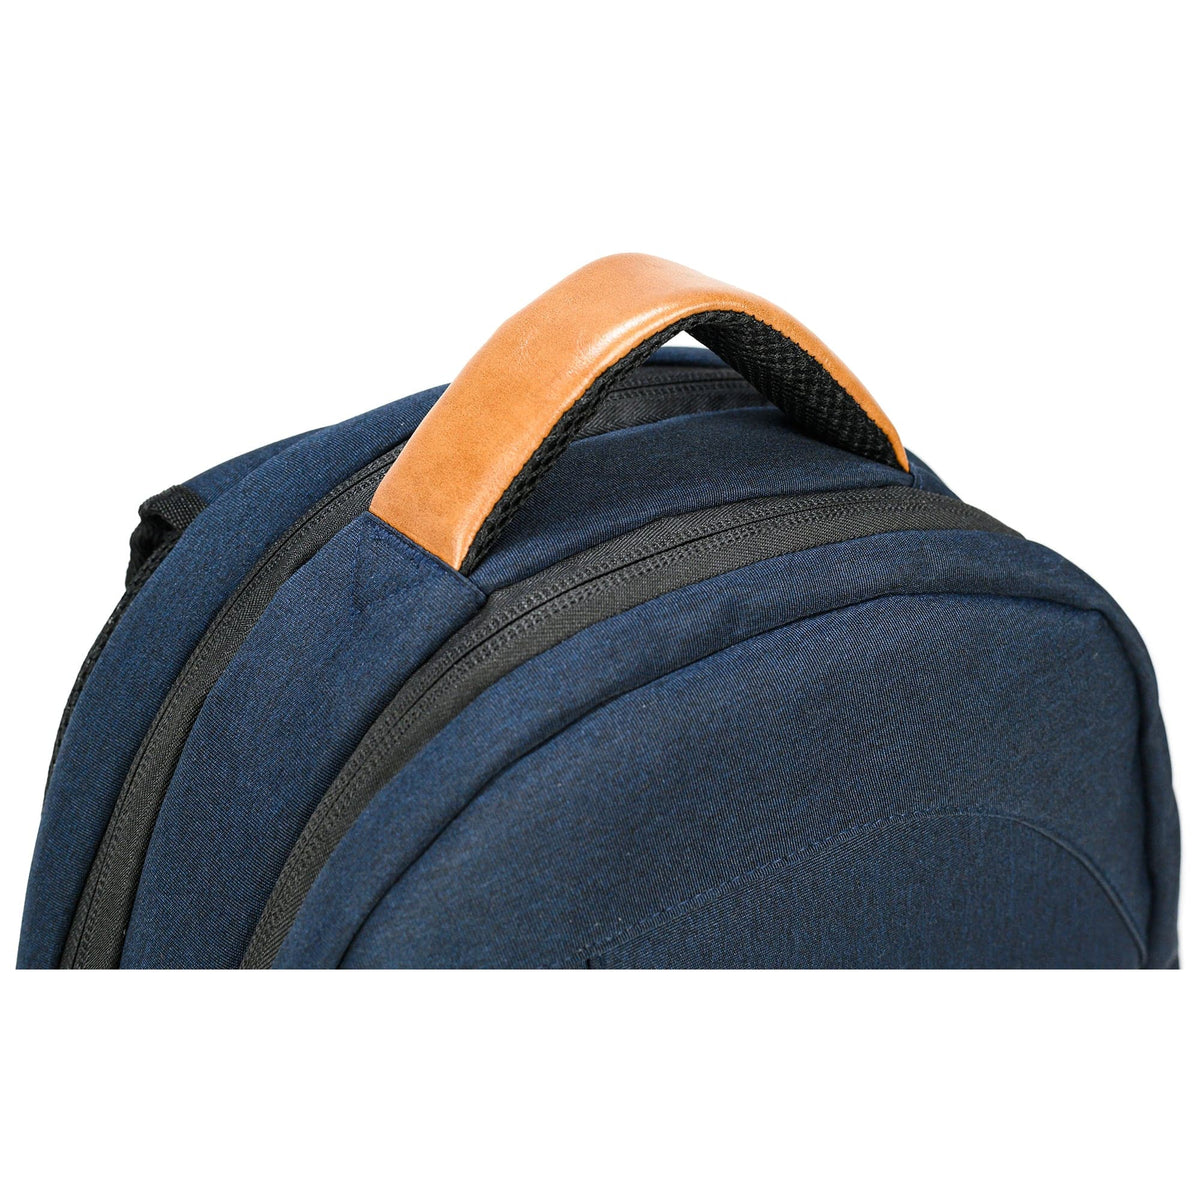 PKG Durham 15" Laptop Backpack